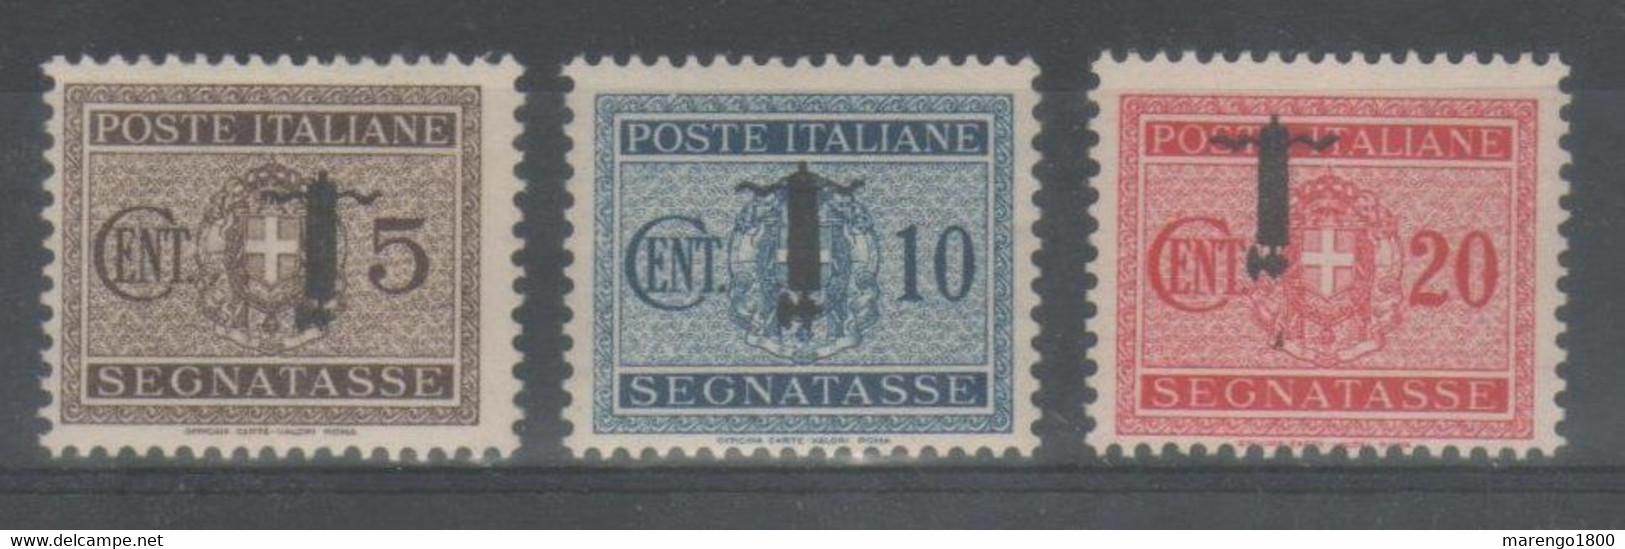 ITALIA 1944 - RSI - Segnatasse 5, 10 E 20 C. ** Varietà Soprastampa Capovolta - Firmati Raybaudi +1          (g7924) - Postage Due